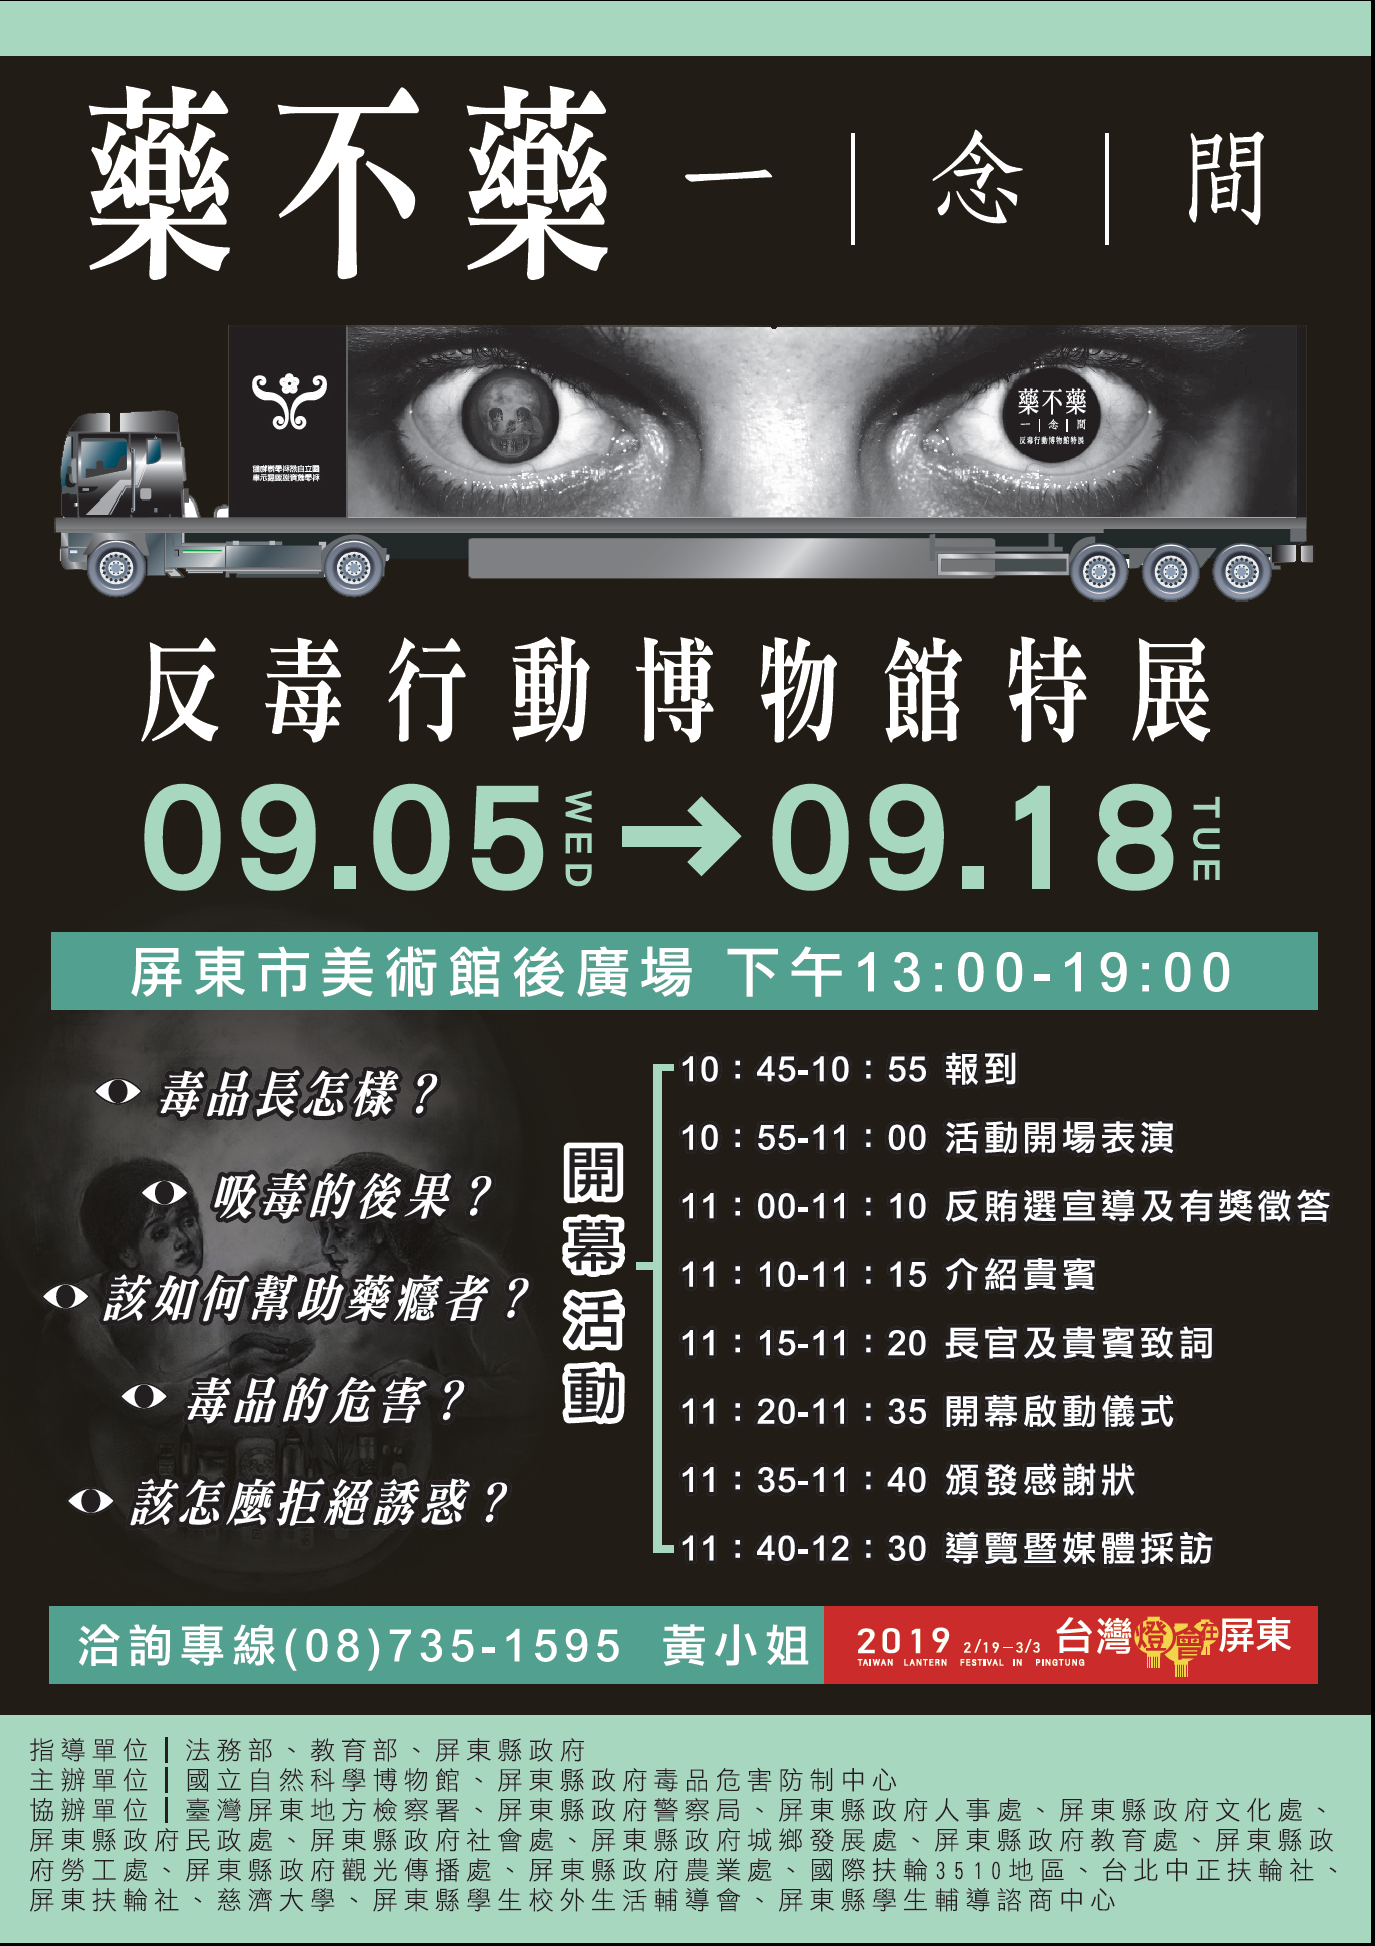 「藥不藥．一念間」反毒行動博物館特展9月5日至18日於屏東展出(免費參展)